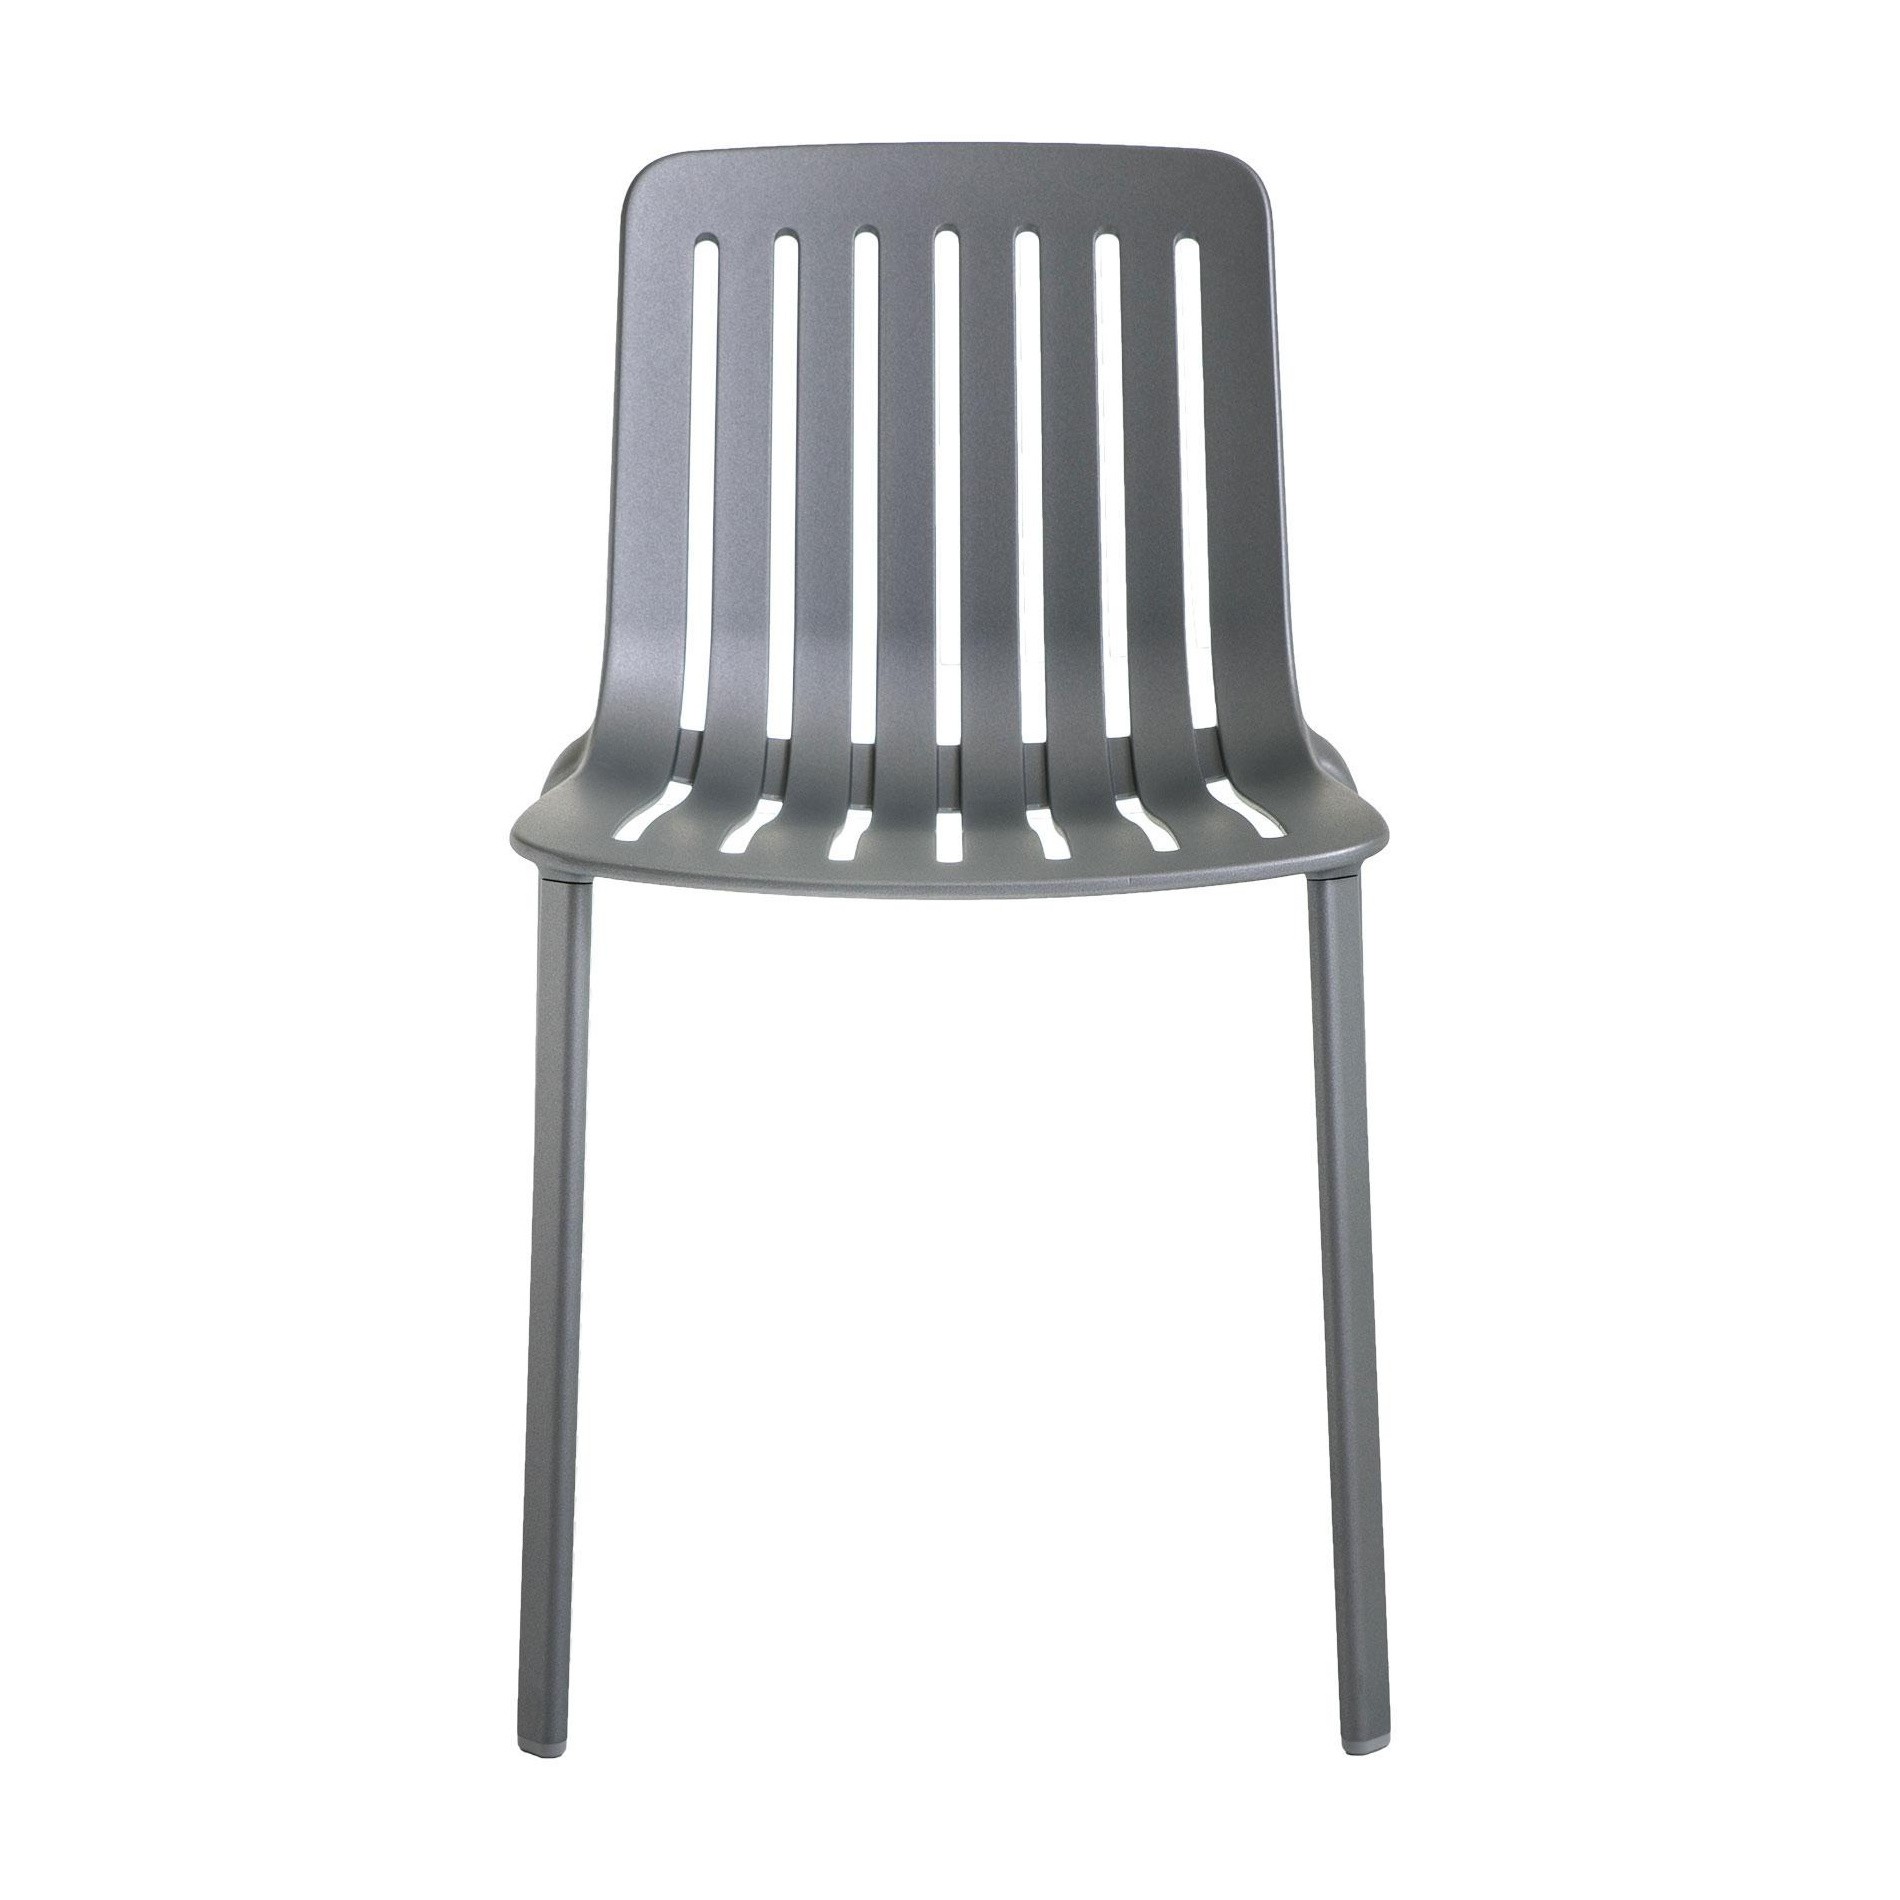 PLATO καρέκλα - συσκευασία 2 τεμαχίων